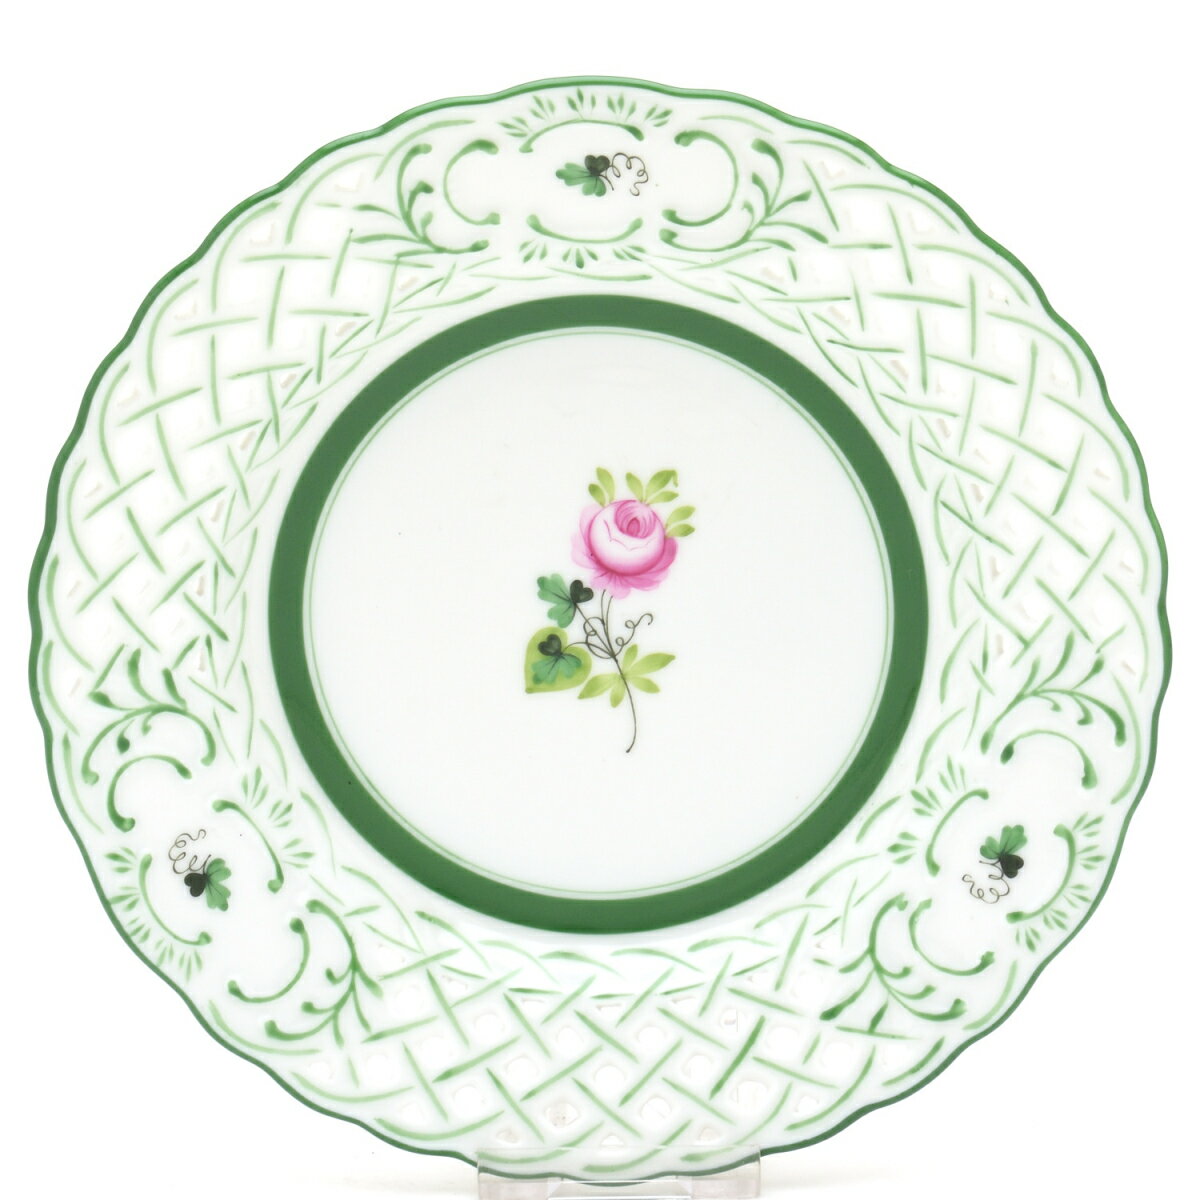 ヘレンドVRH(ヘレンドのウィーンのバラ)(08437)オープンワークス飾り皿(透かし彫り)洋食器 陶磁器HEREND ハンガリー【smtb-TD】【saitama】